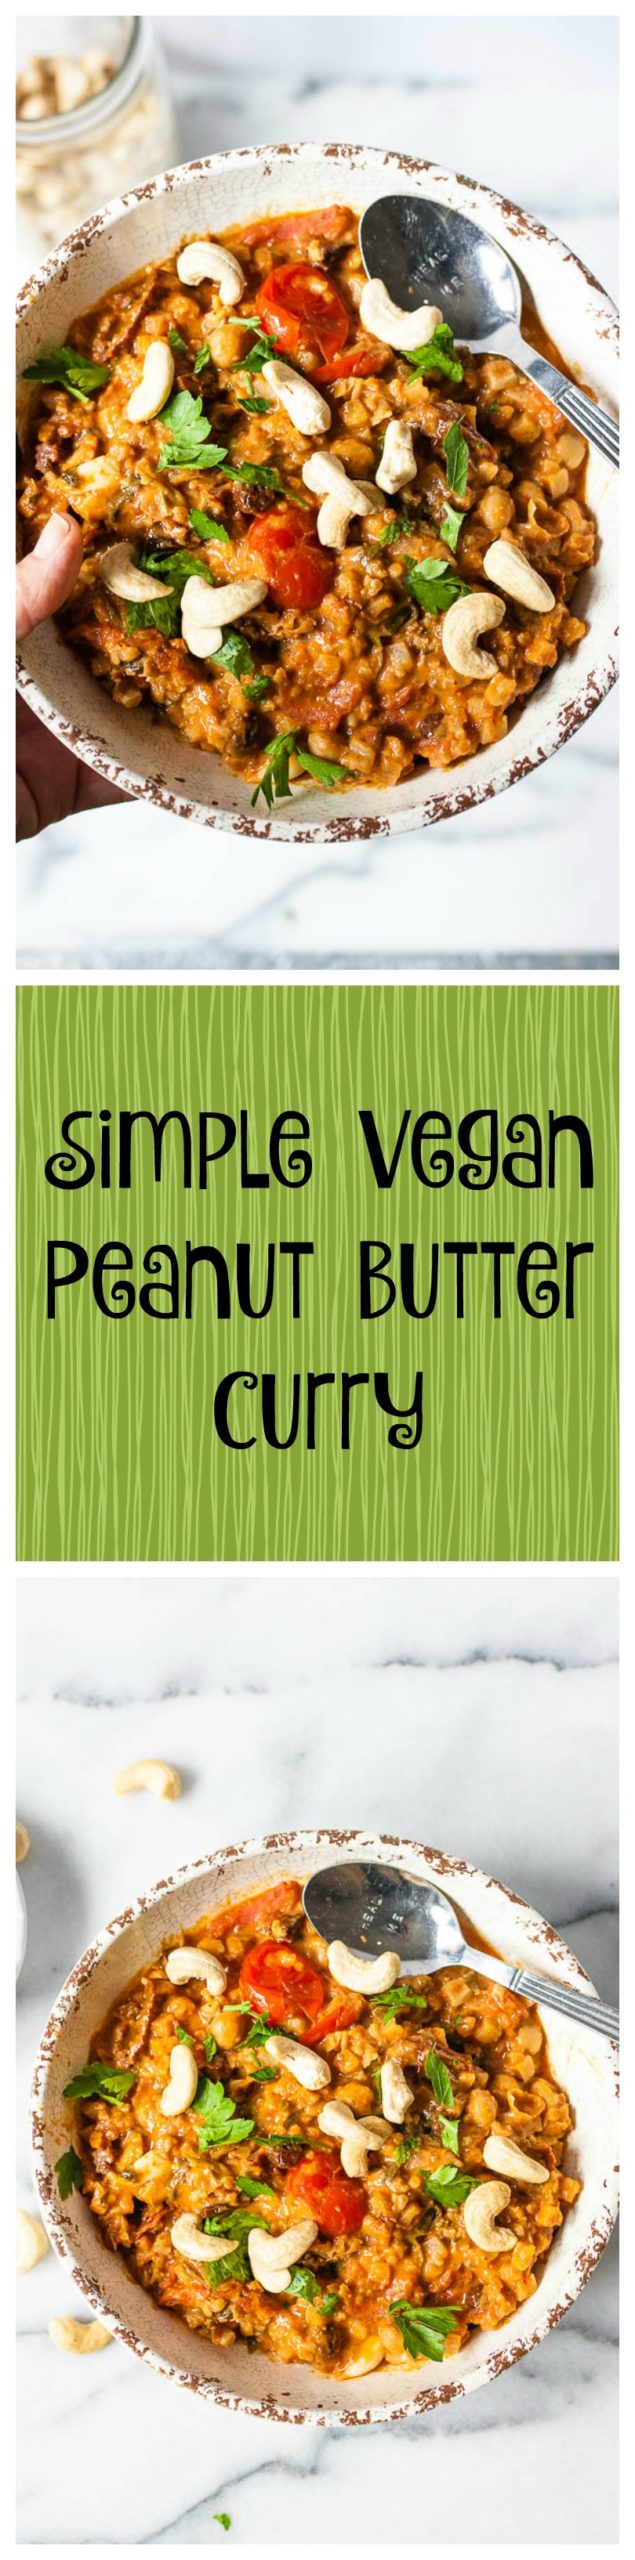 simple vegan peanut butter curry